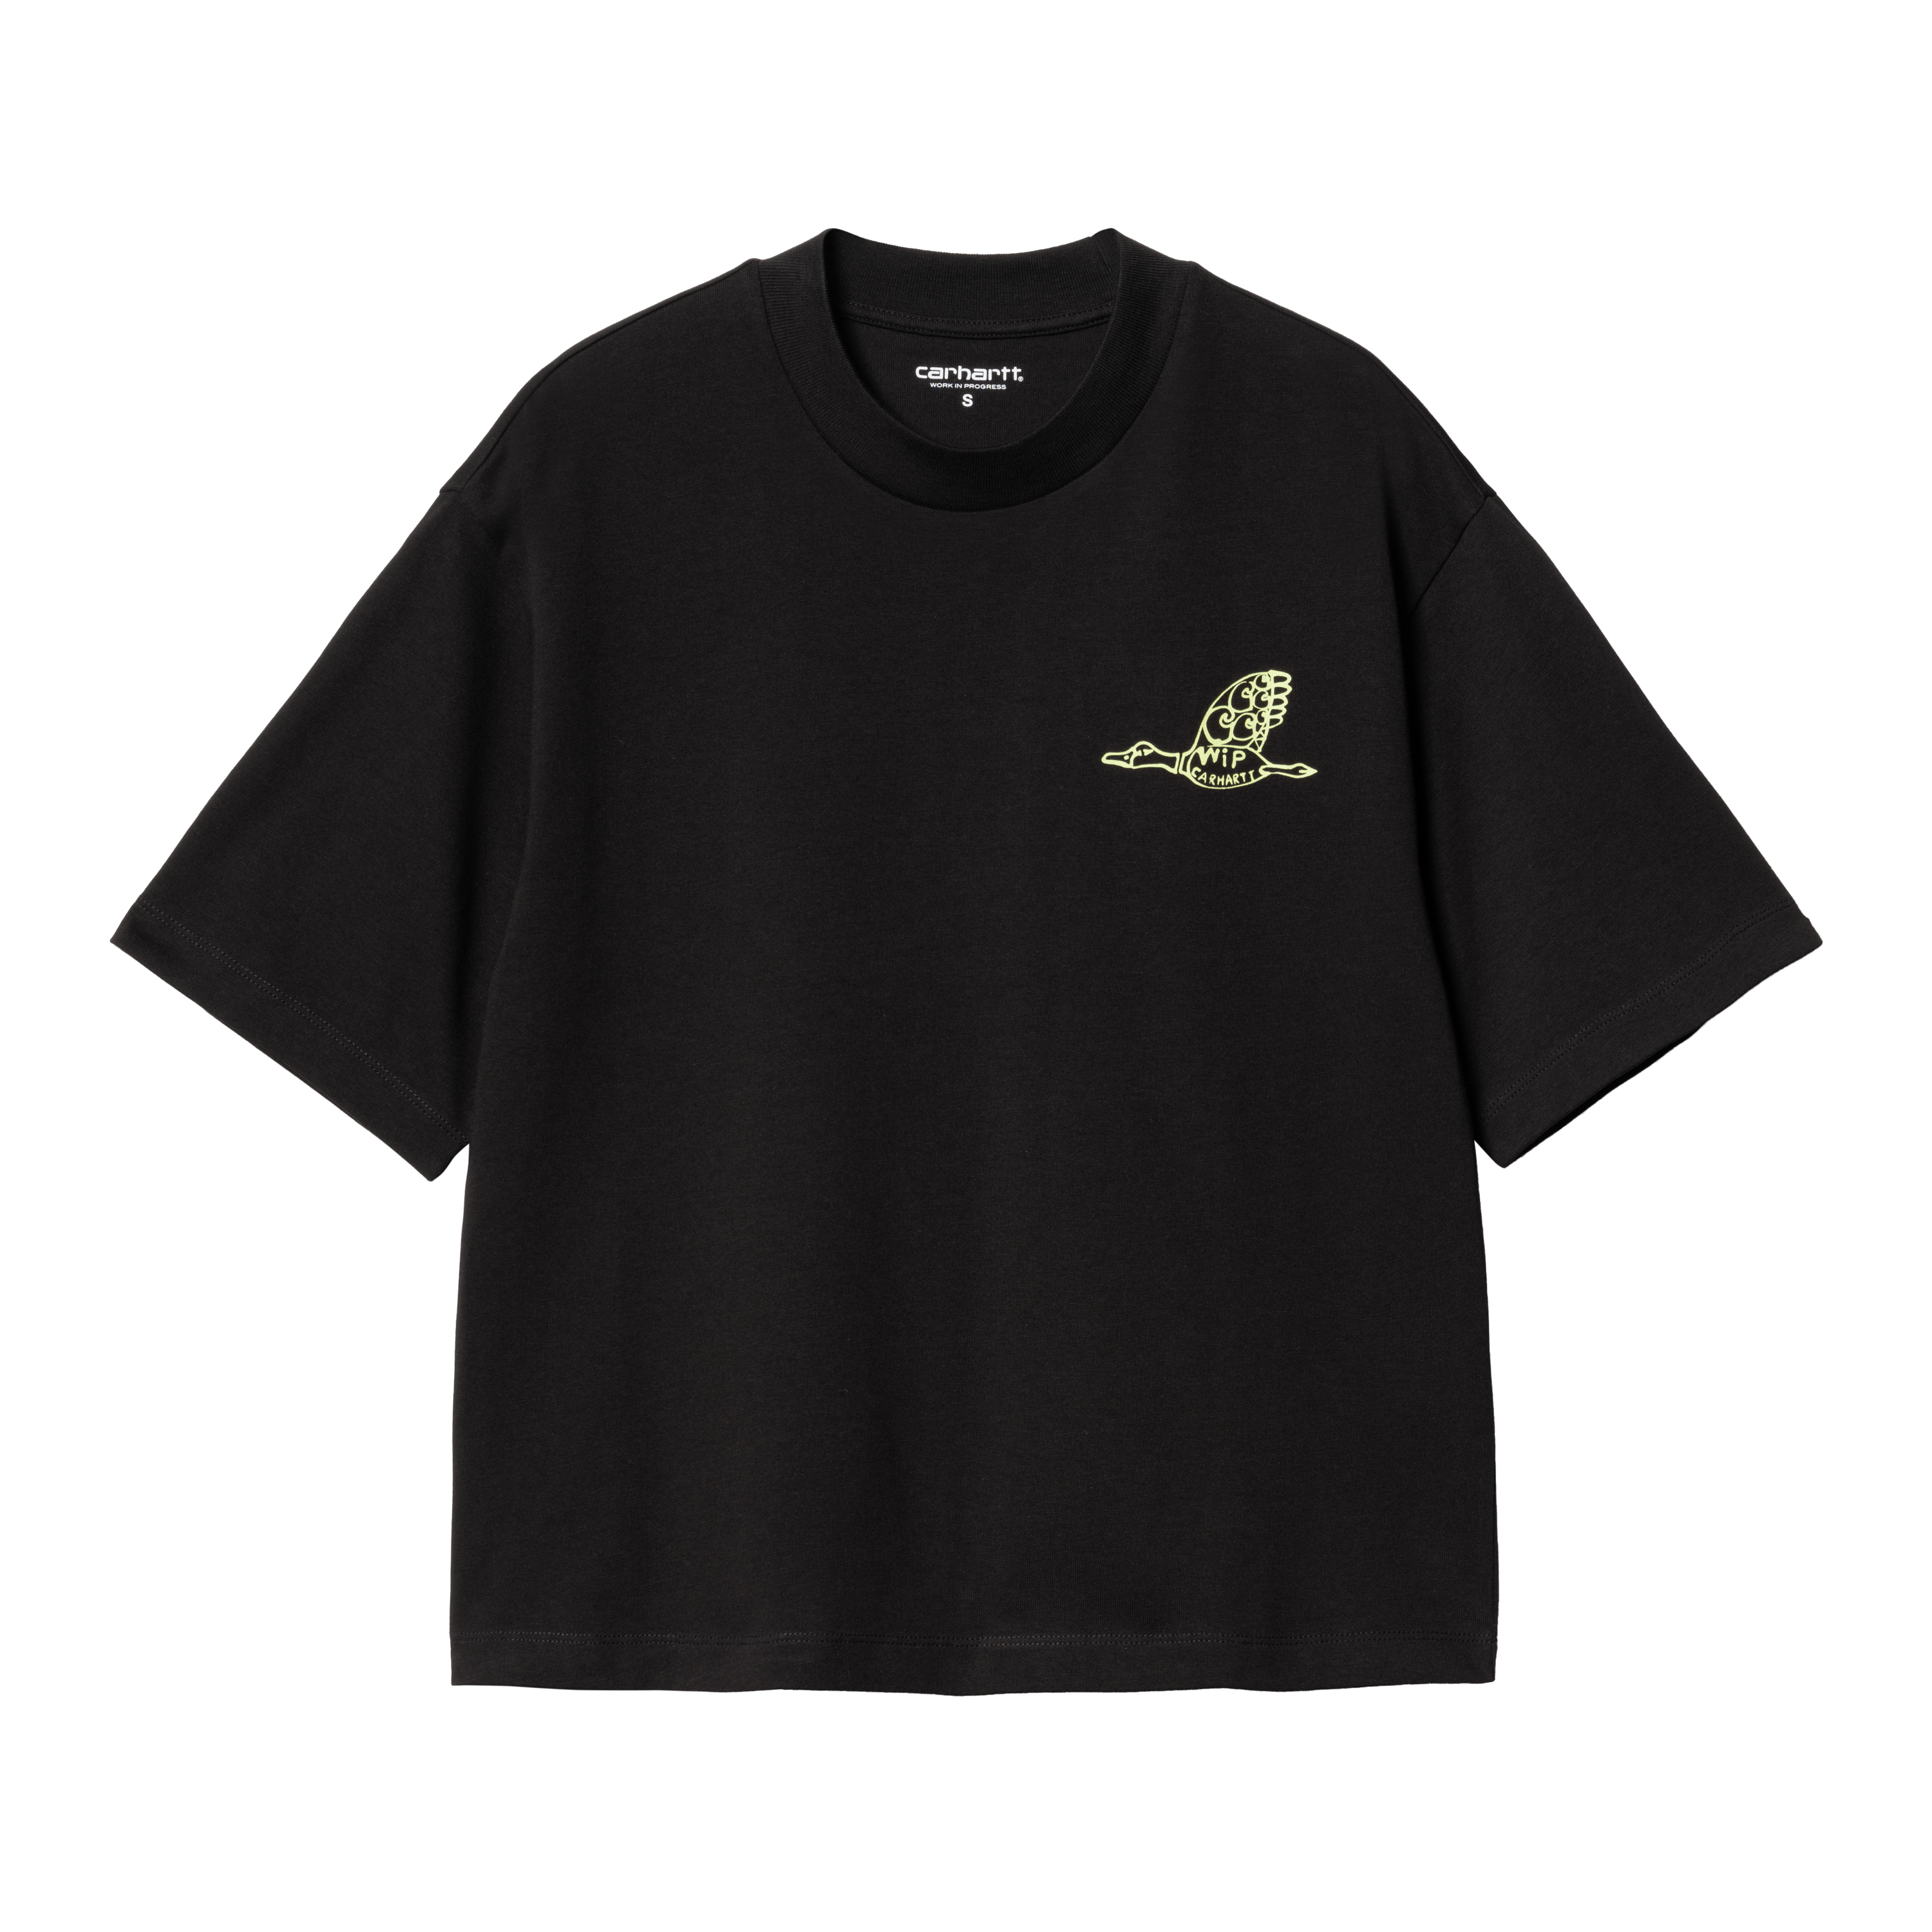 Carhartt WIP Women’s Short Sleeve Kainosho T-Shirt in Black